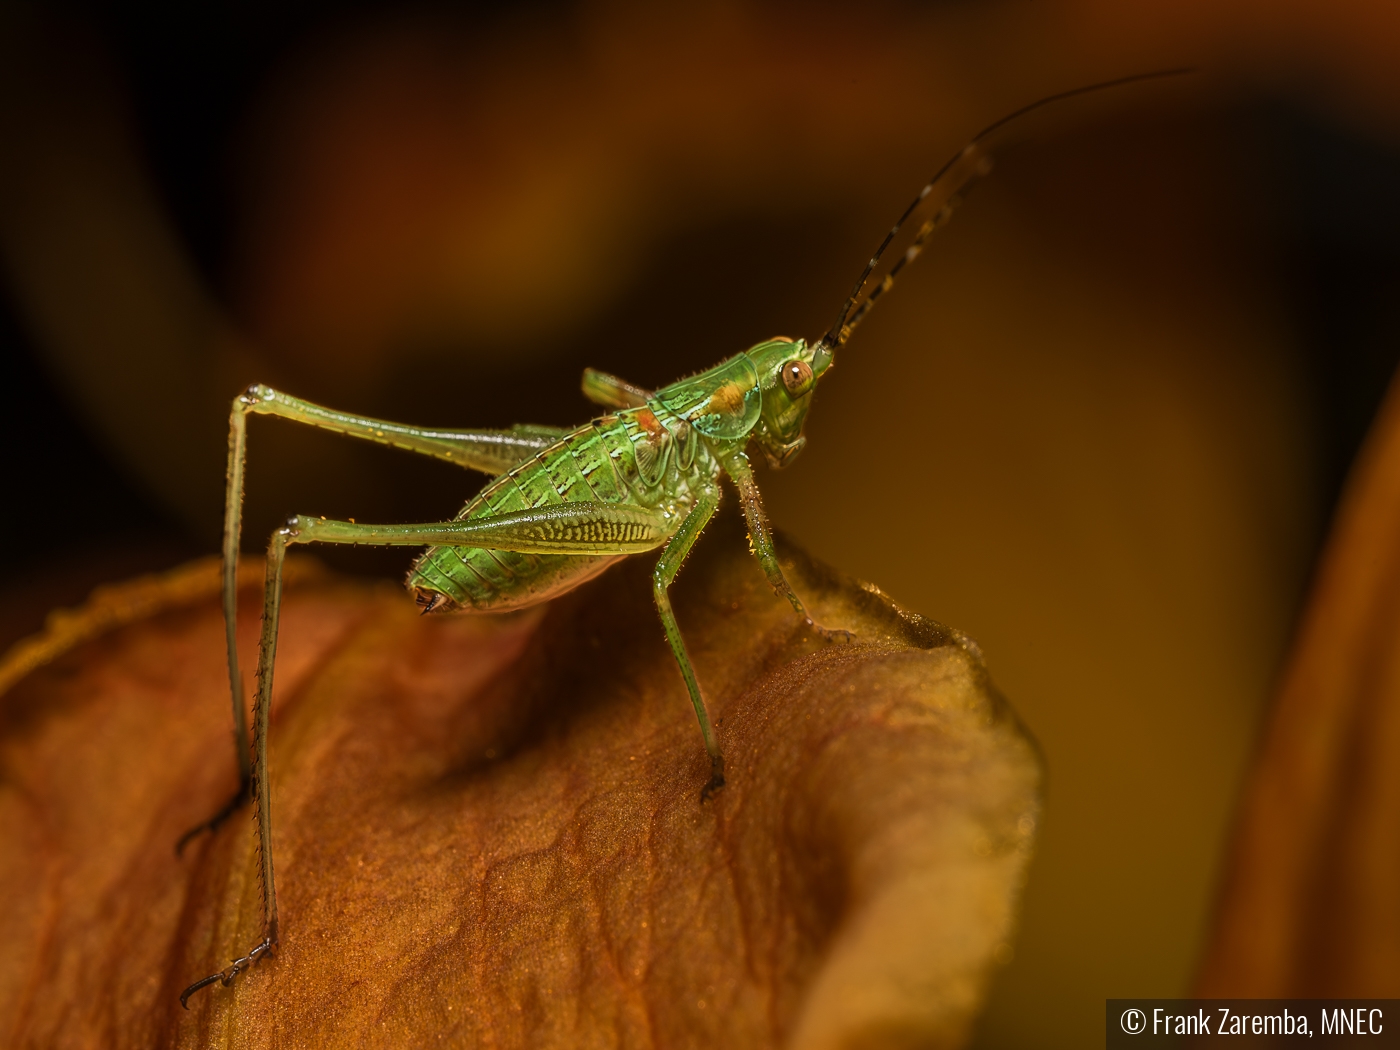 Grasshopper on mushroom by Frank Zaremba, MNEC